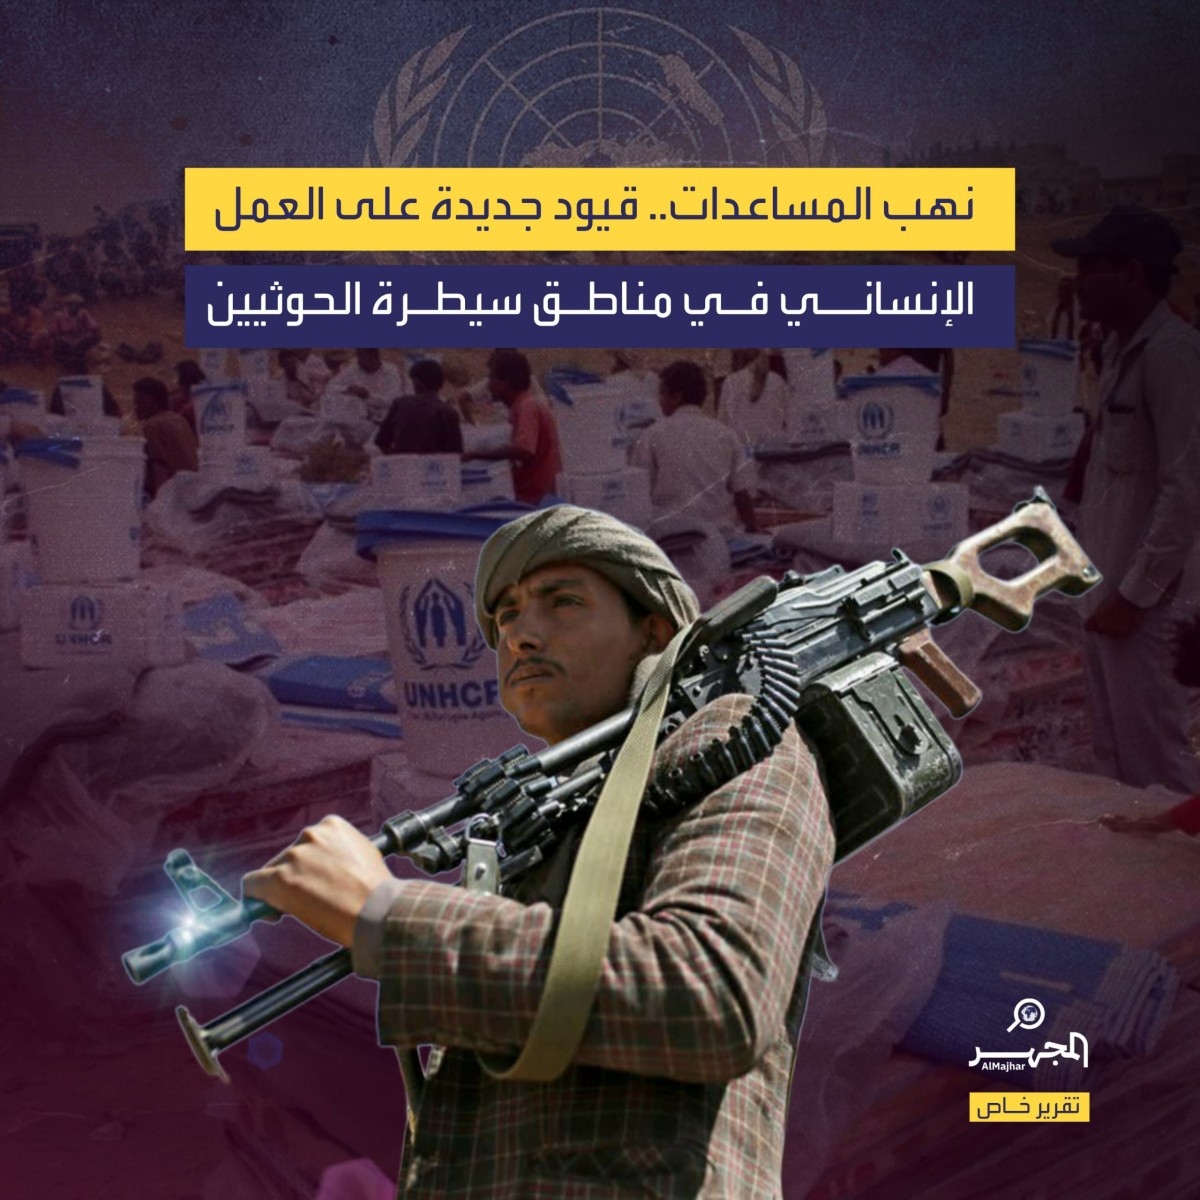 نهب المساعدات.. قيود جديدة على العمل الإنساني في مناطق سيطرة الحوثيين (تقرير خاص)